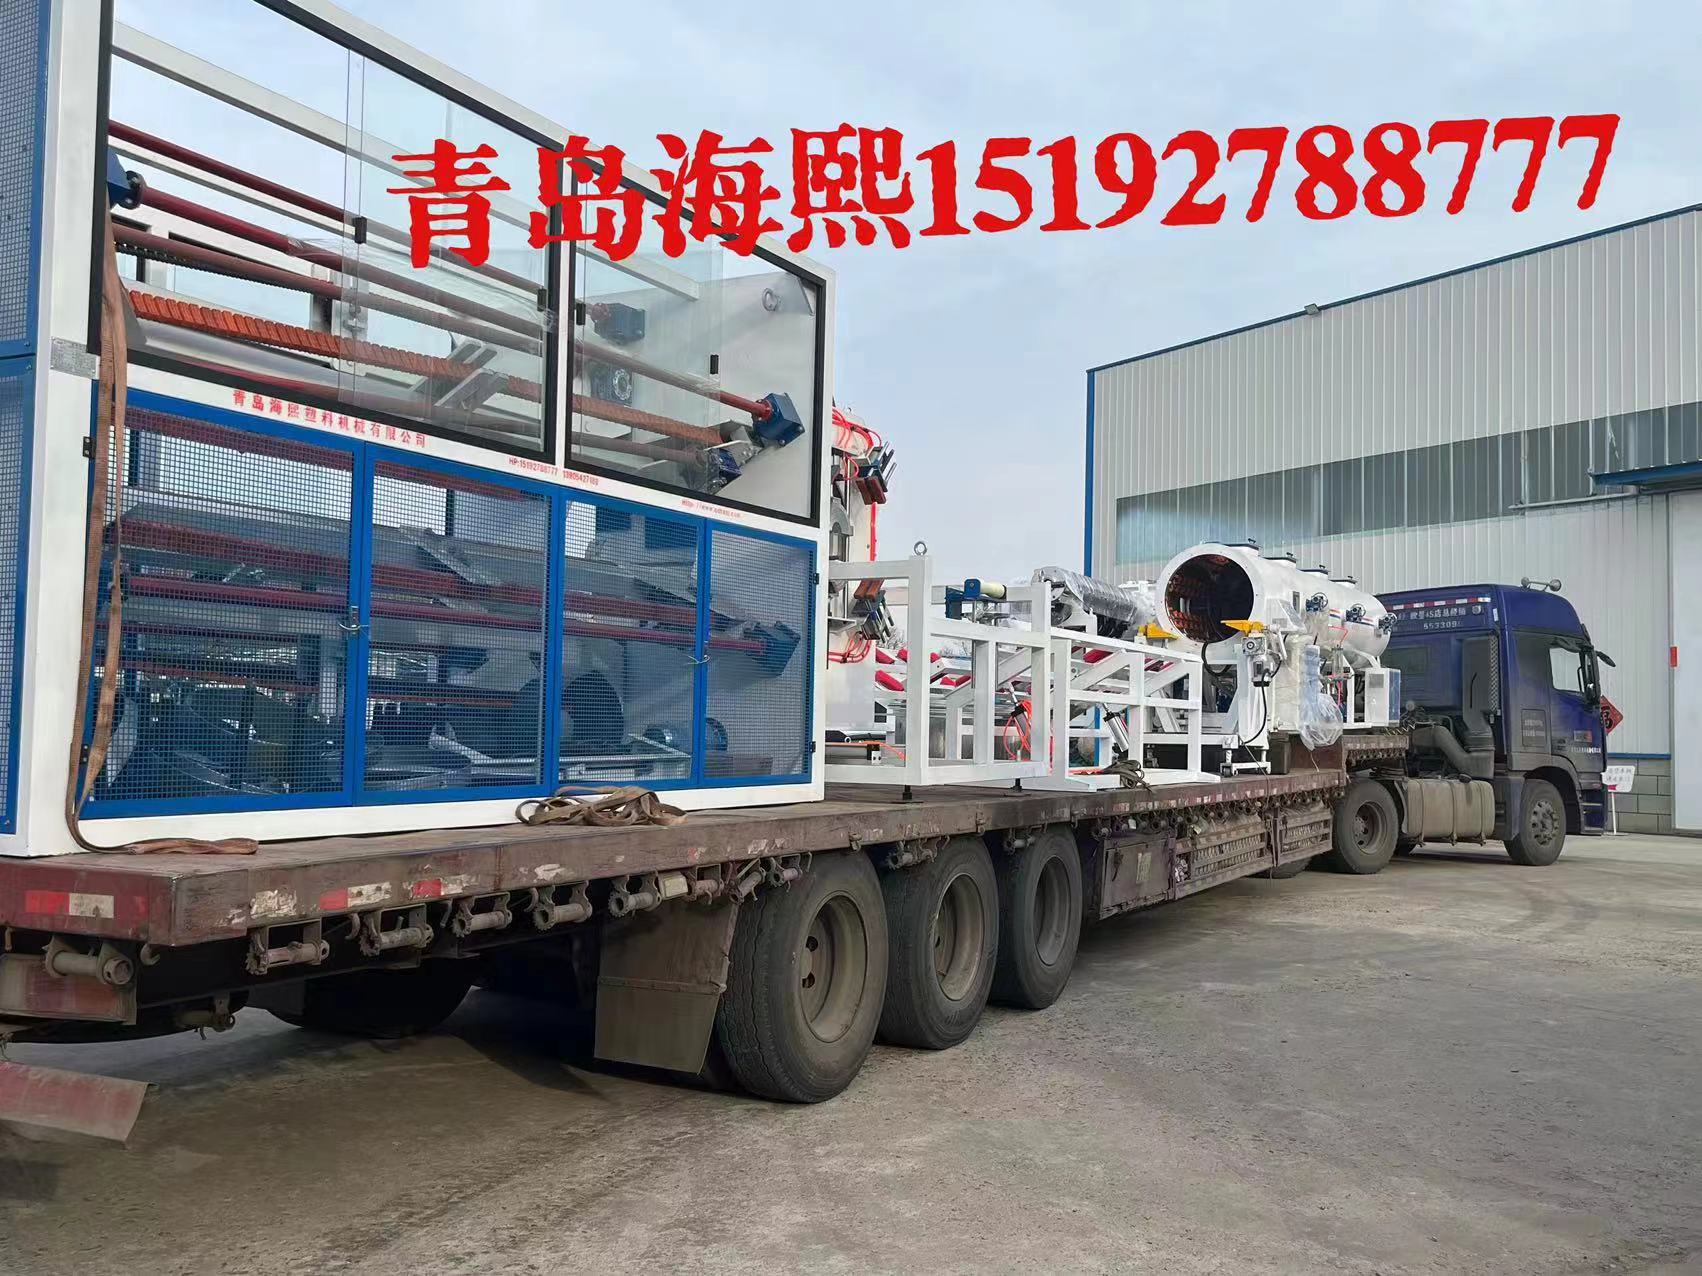 Cangzhou Pengkun construction machinery pipe fittings Co., LTD